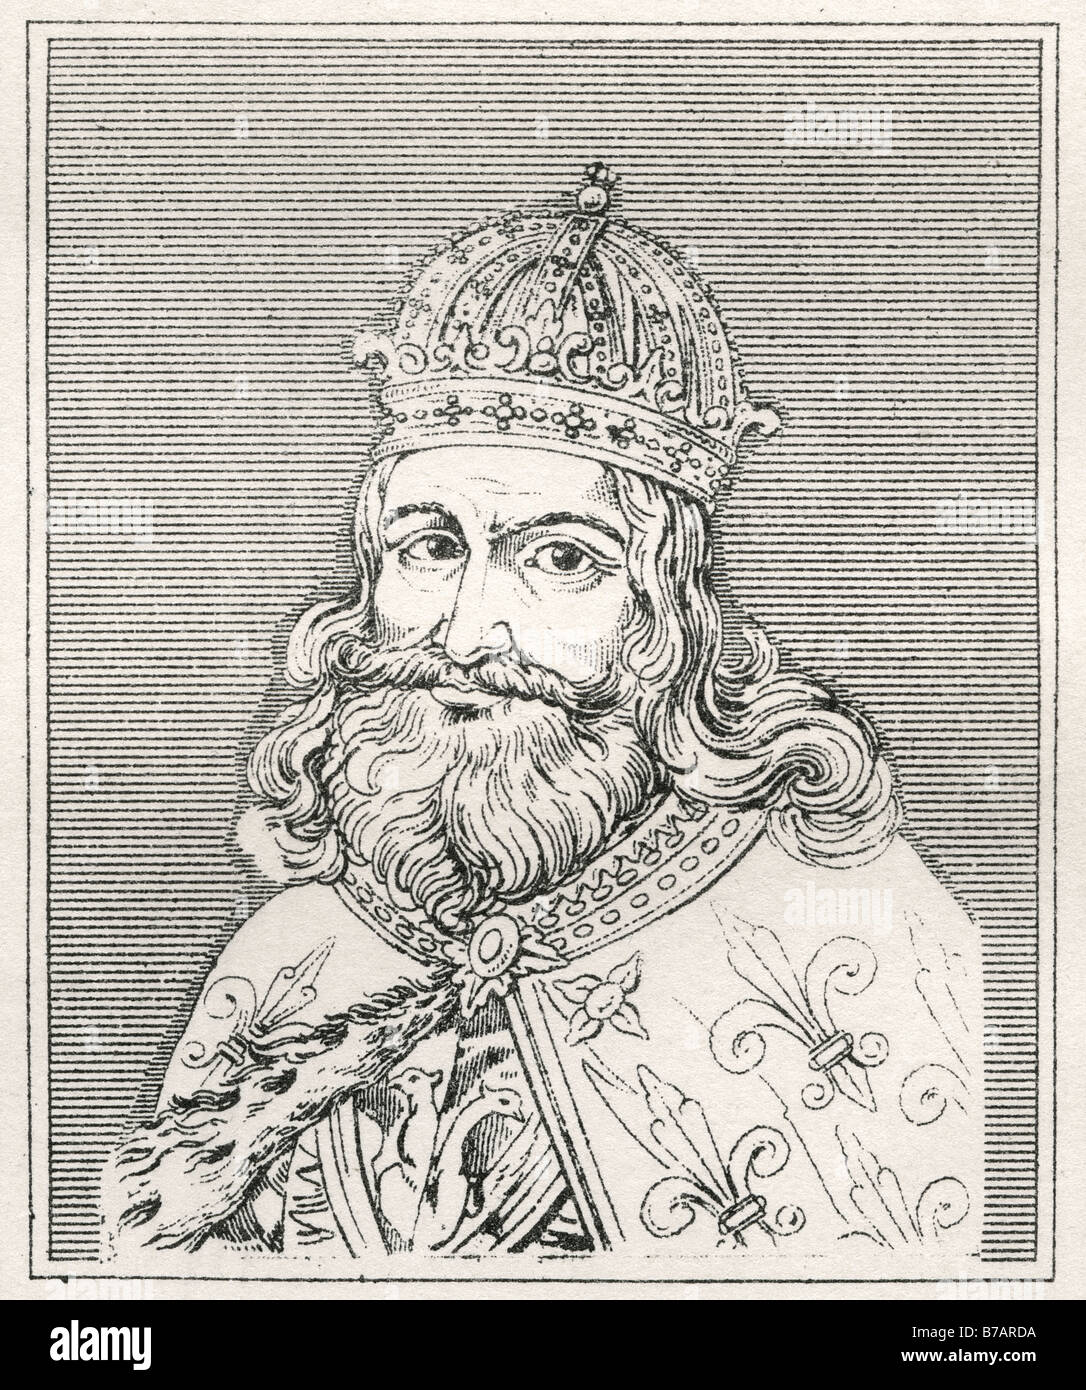 Charlemagne Carolus Magnus Magnus, Karolus ou sens Charles le Grand (2 avril 742 - 28 janvier 814) fut roi des Francs fr Banque D'Images